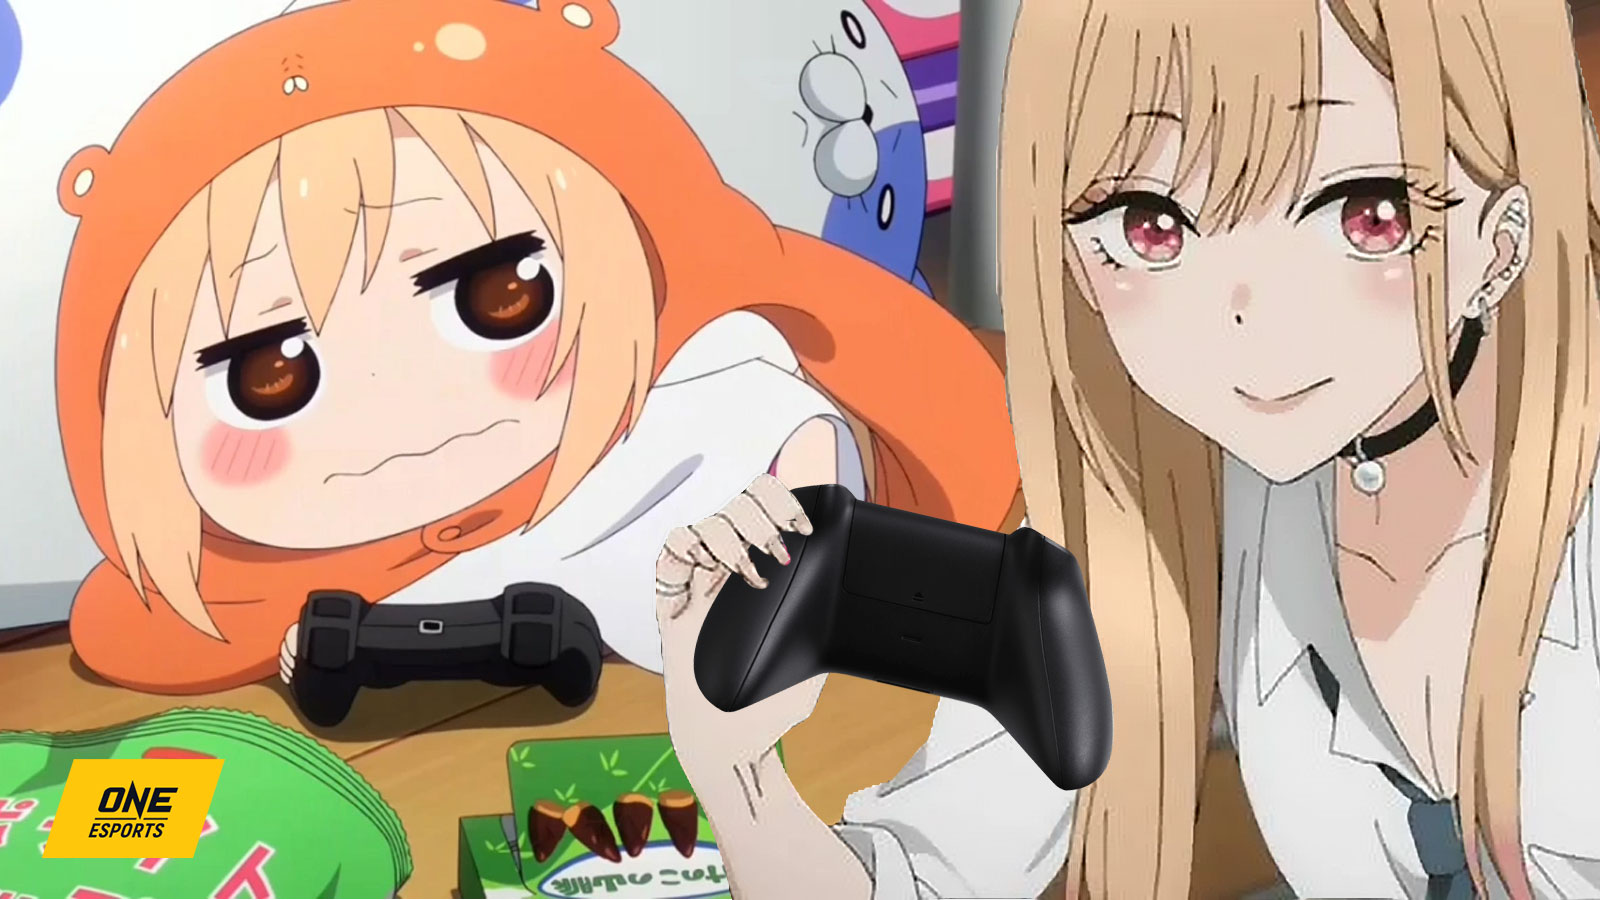 Anime gamer girls Umaru and Marin Kitagawa